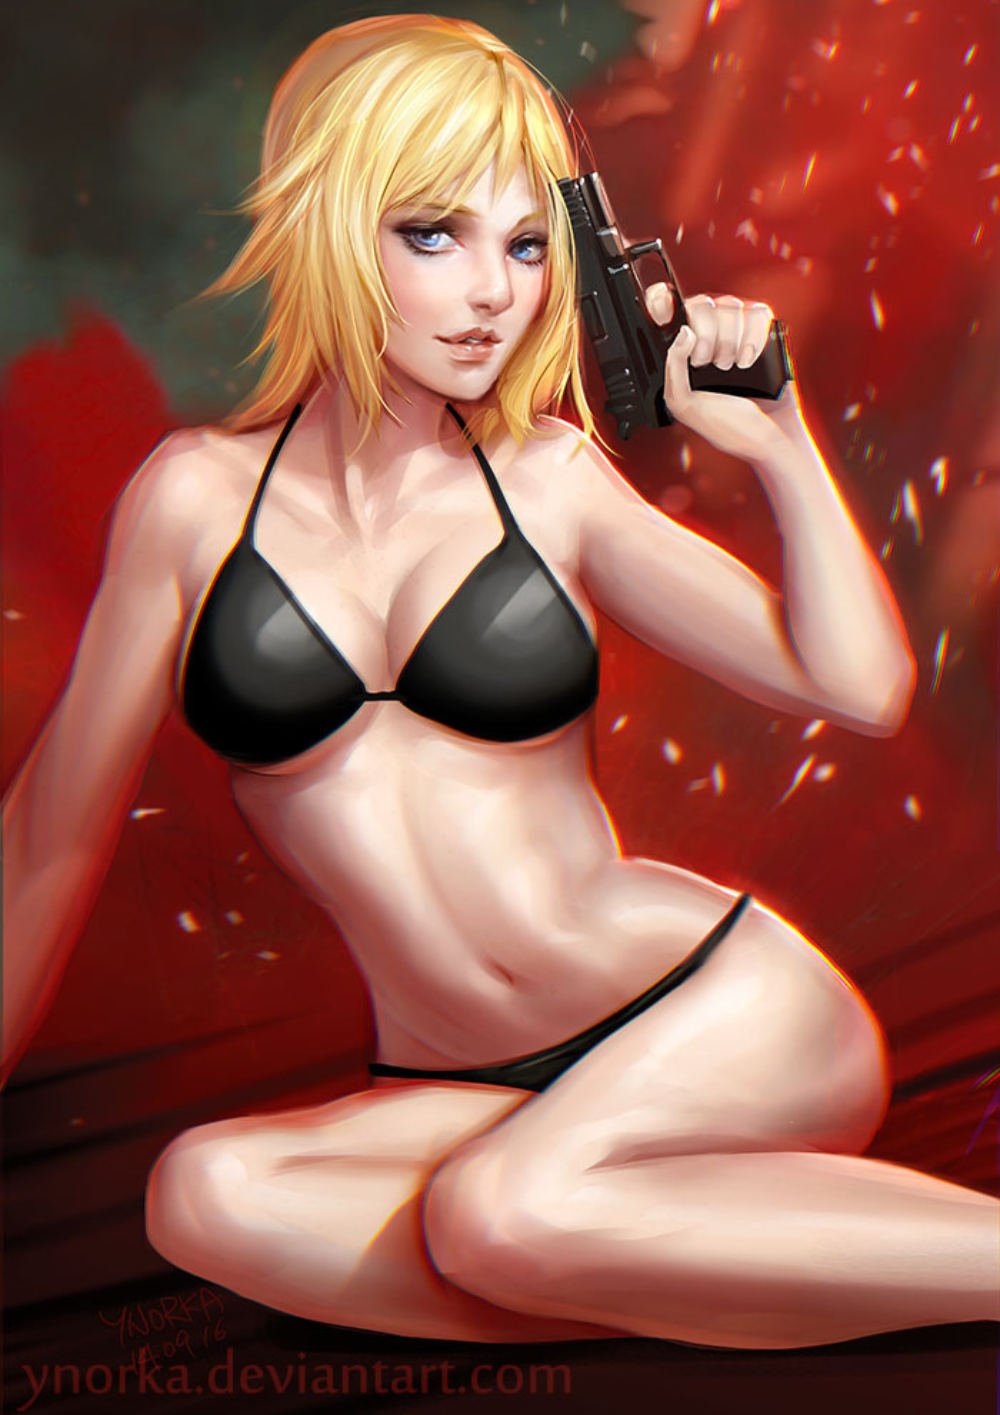 General 1000x1415 Aya Parasite Eve bikini gun blonde blue eyes video game girls Video Game Horror fantasy girl girls with guns